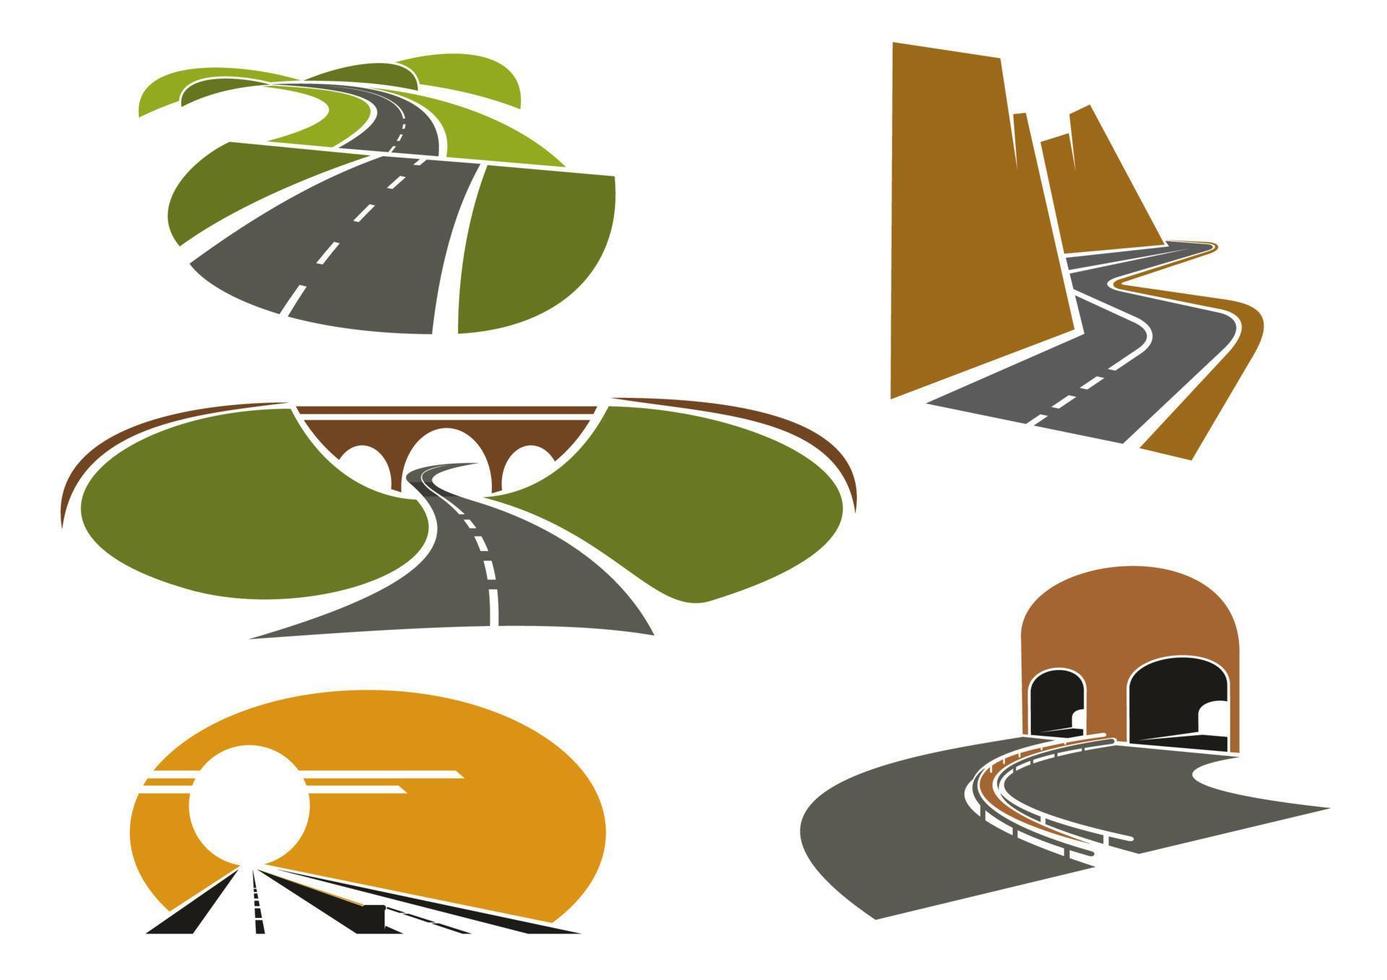 vías rápidas, autopistas, pasos subterráneos y autopistas vector